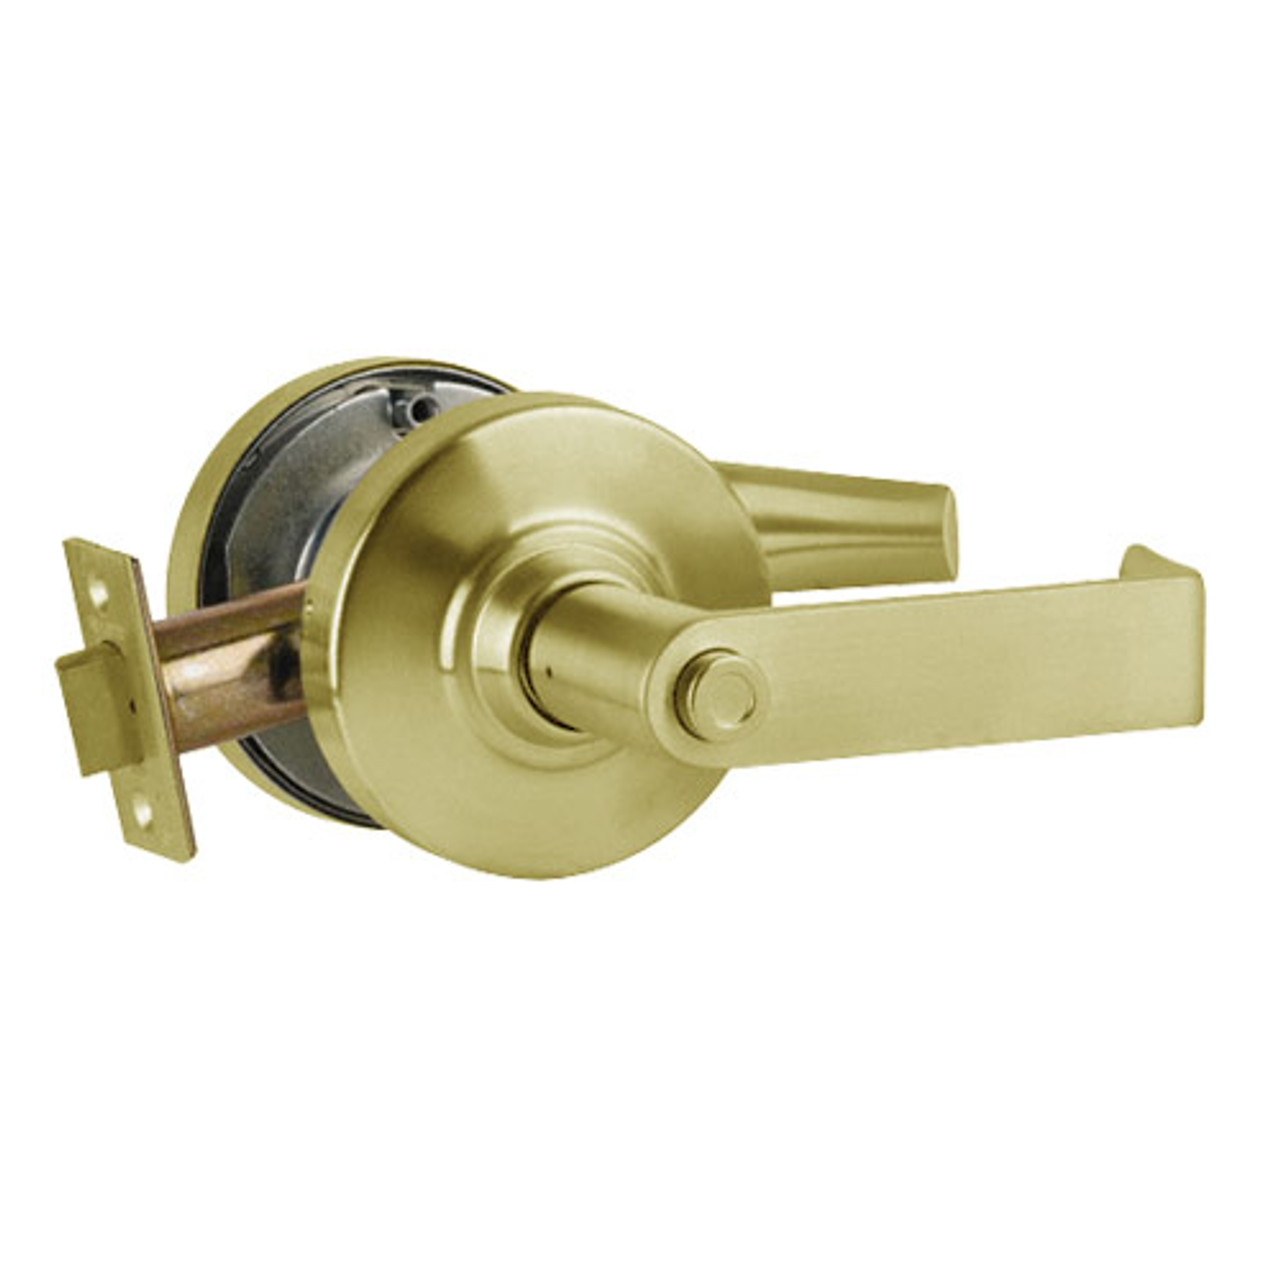 ND40S-RHO-606 Schlage Rhodes Cylindrical Lock in Satin Brass